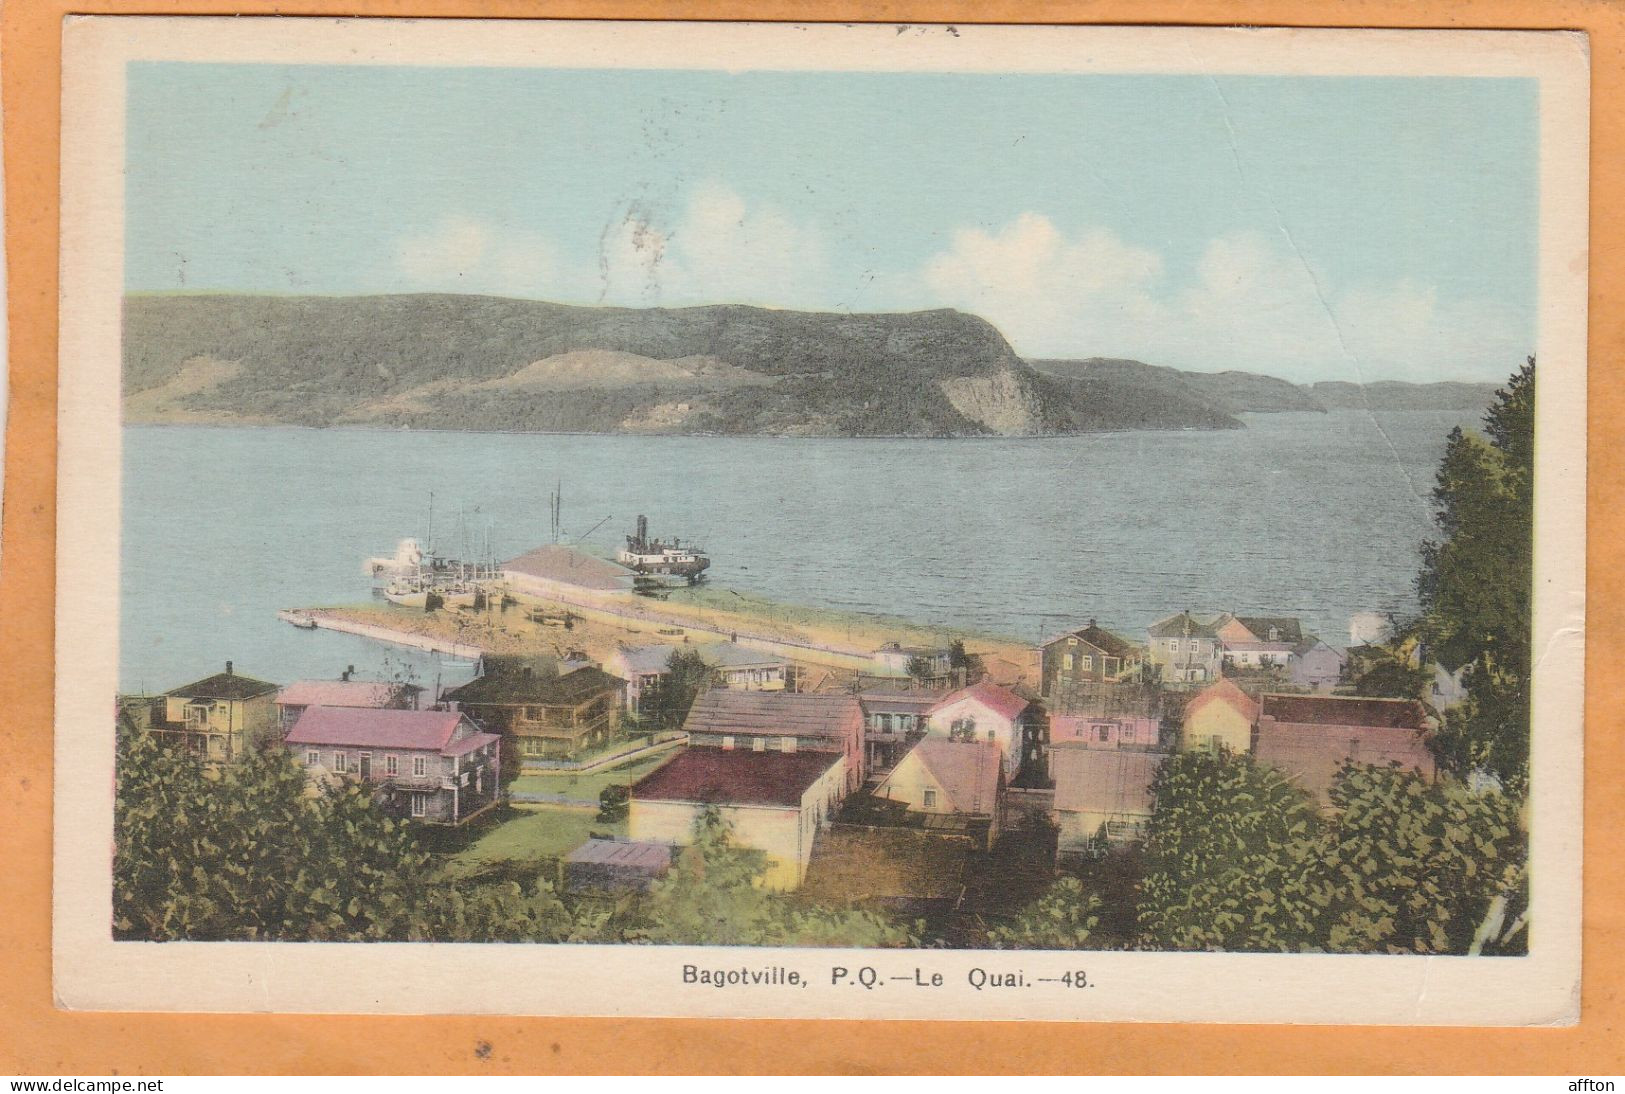 La Baie Bagotville Quebec Canada Old Postcard - Saguenay